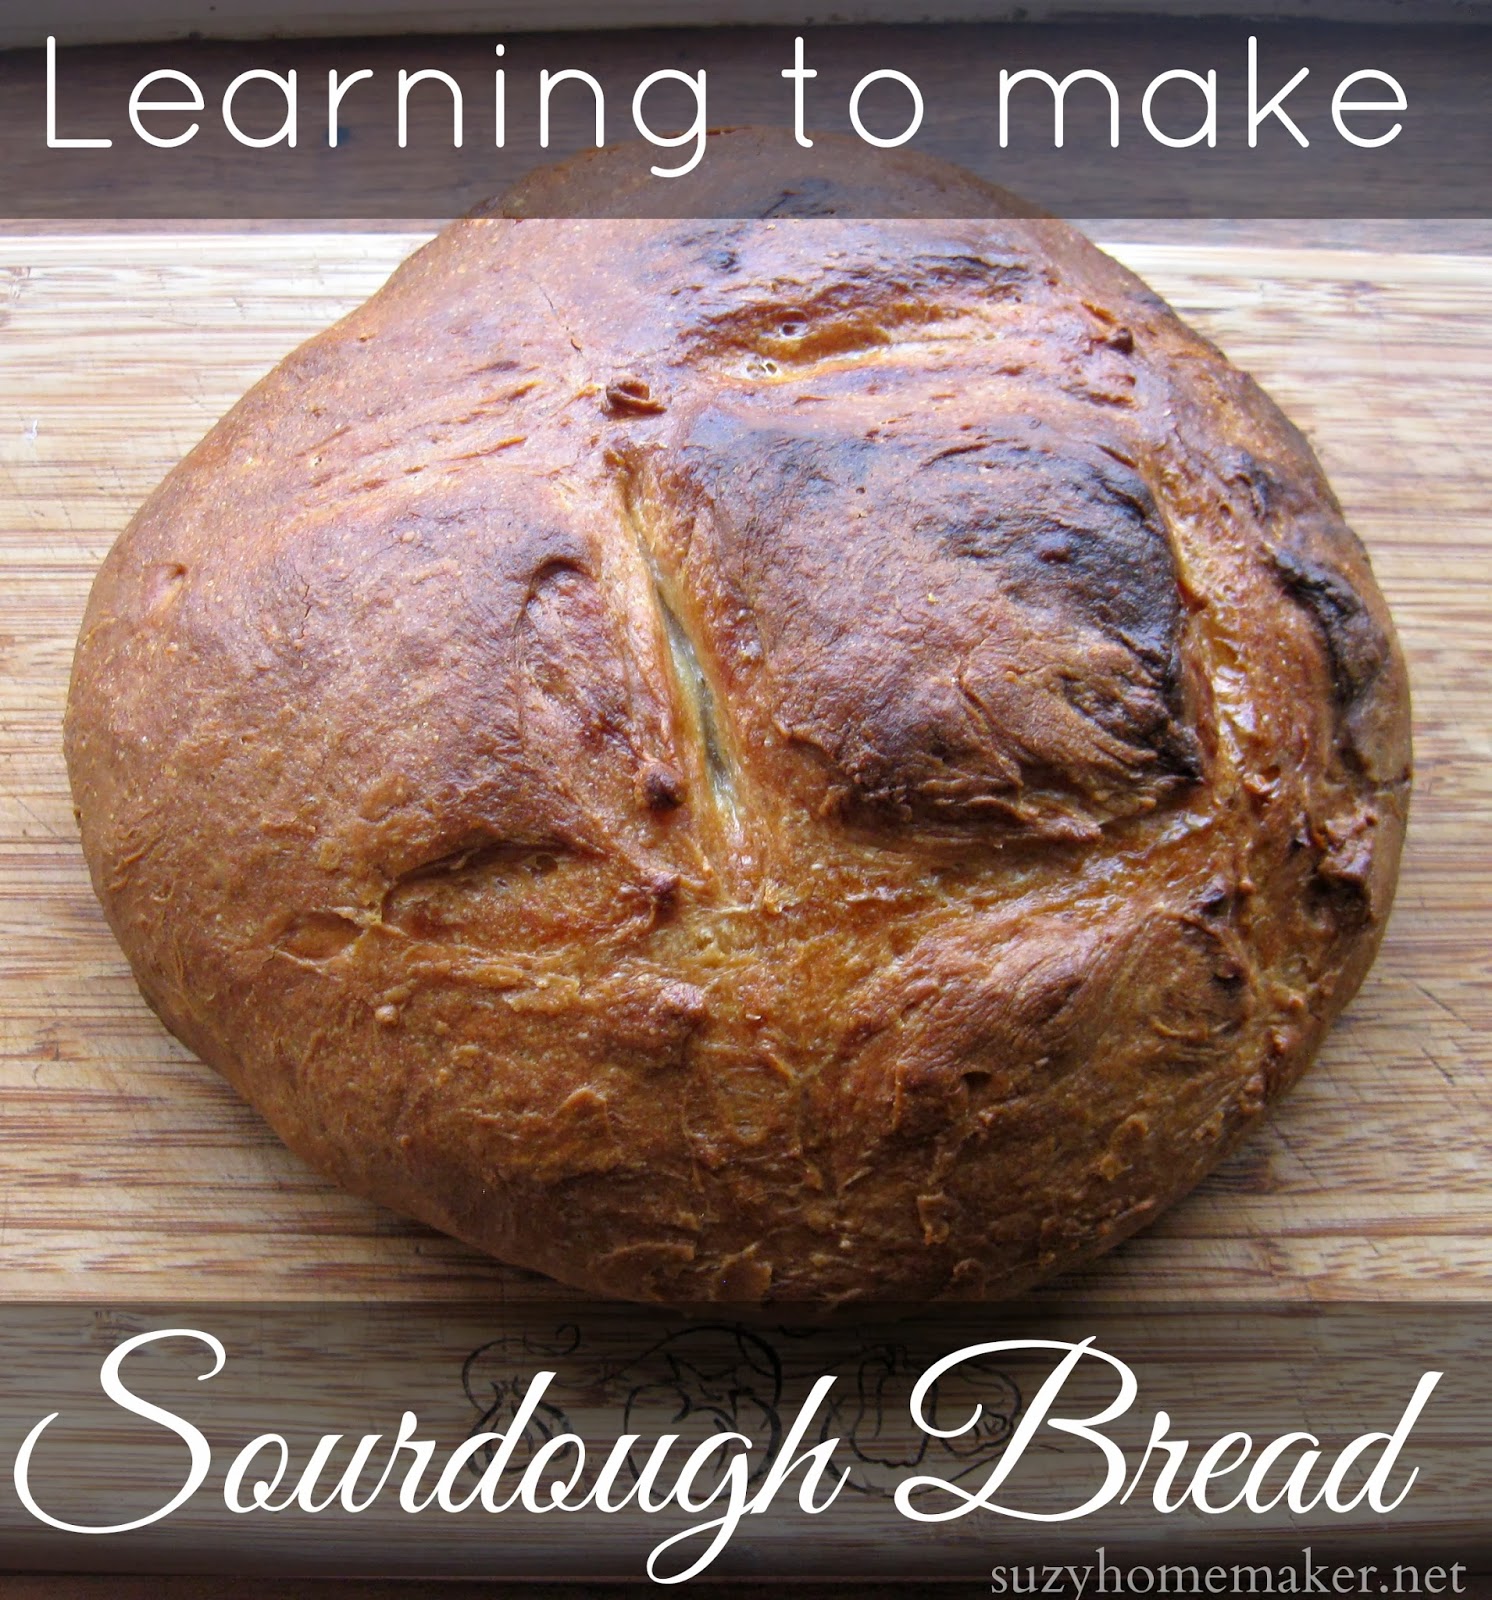 Learning to make sourdough bread | suzyhomemaker.net